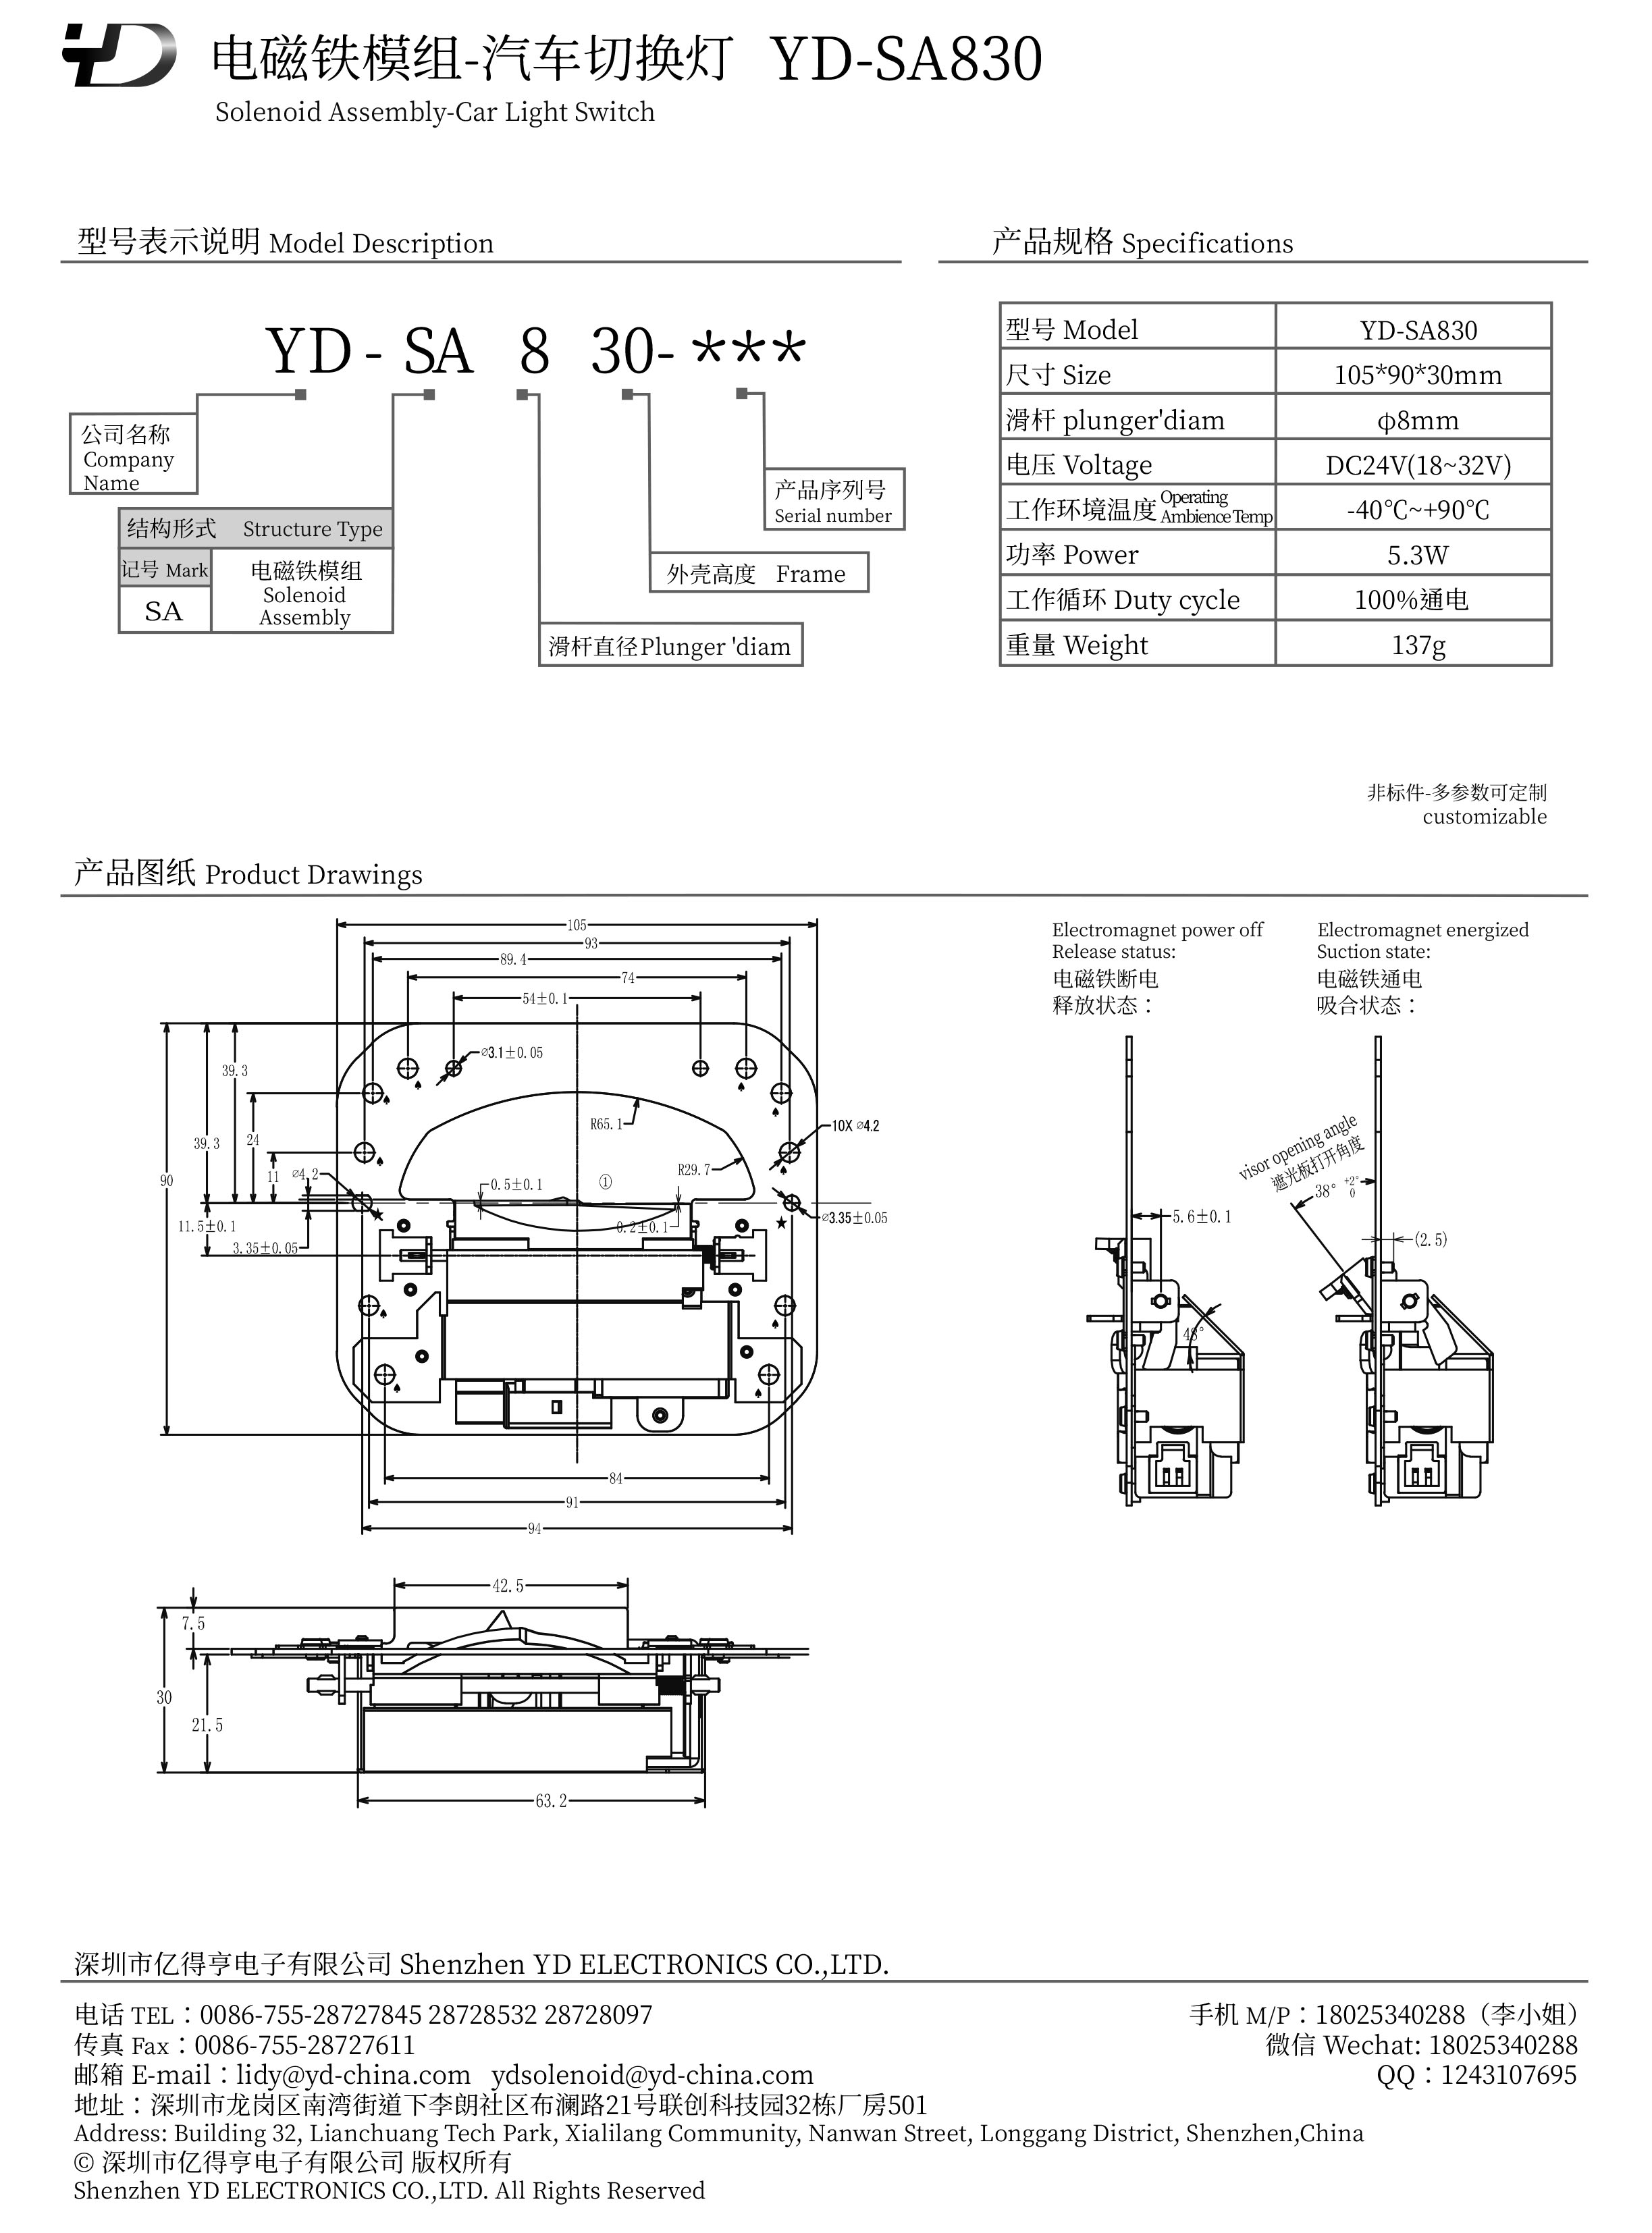 YD-SA830-PDF.jpg